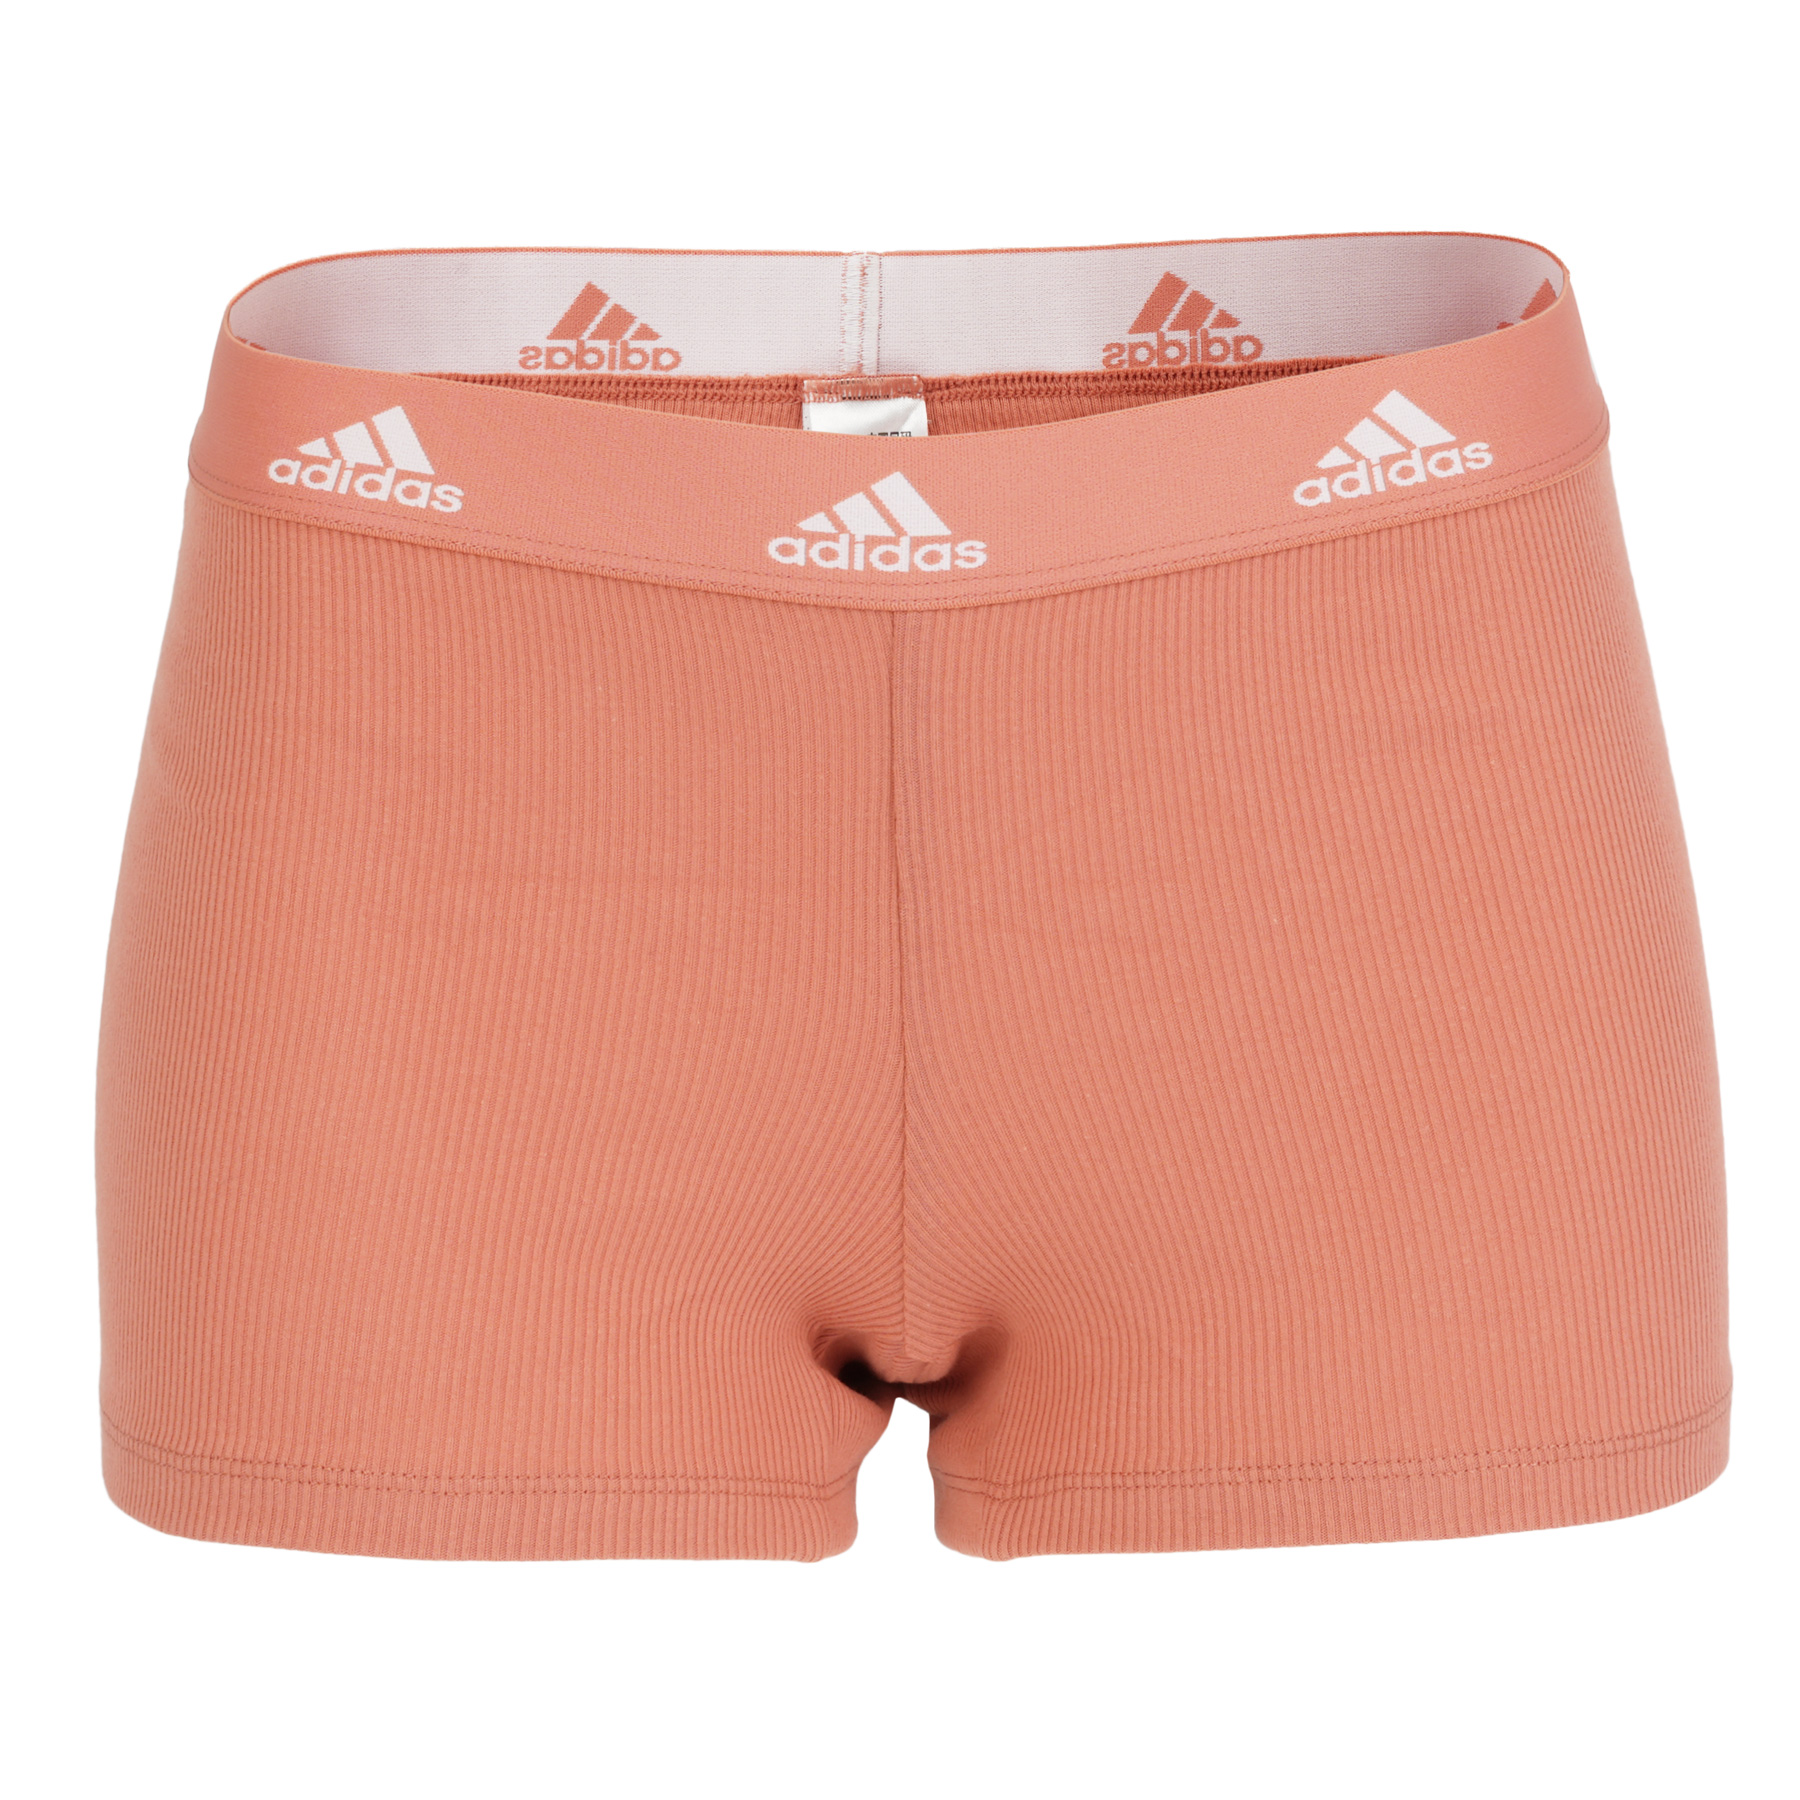 Produktbild von adidas Sports Underwear Rib 2x2 Cotton Boxershorts Damen - 523 - wonder clay